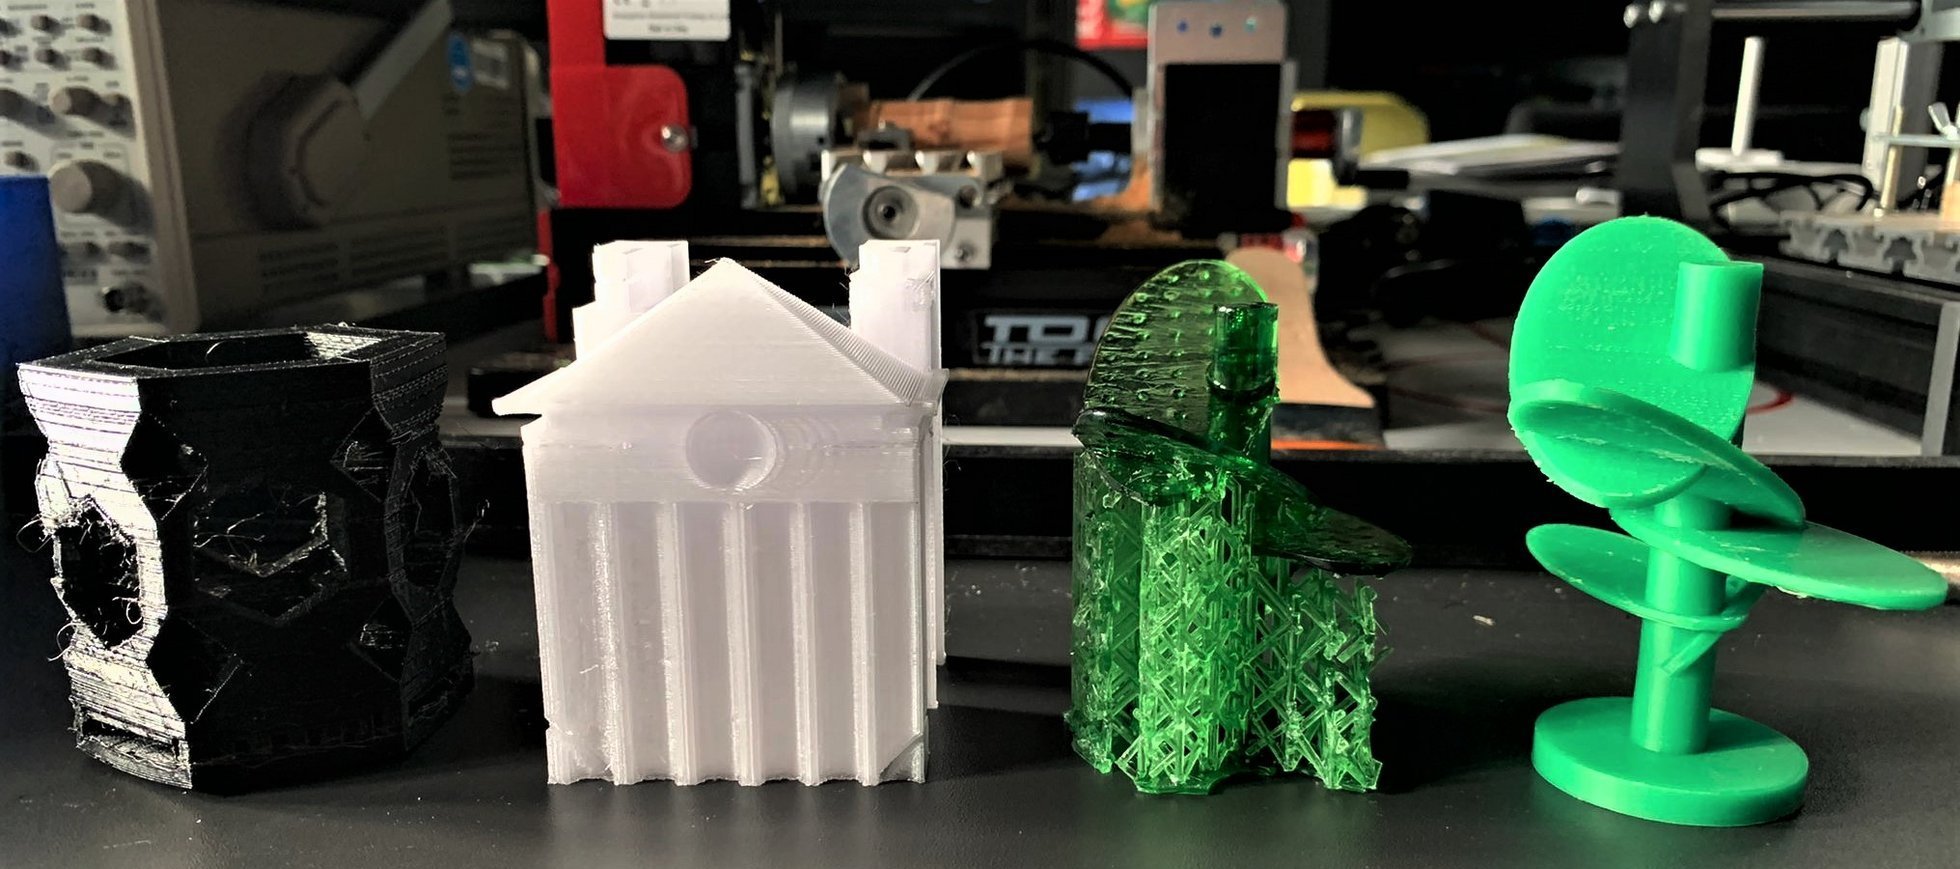 Das Foto zeigt vier Objekte, die im Rahmen des Schulpraktikums mit 3D-Druckern hergestellt wurden: einen achteckigen Stifthalter aus schwarzem Kunststoff, ein Gebäude mit einem Säulenportal aus weißem Kunststoff und aus grünem Kunststoff zwei futuristische, sehr filigrane Bäume.